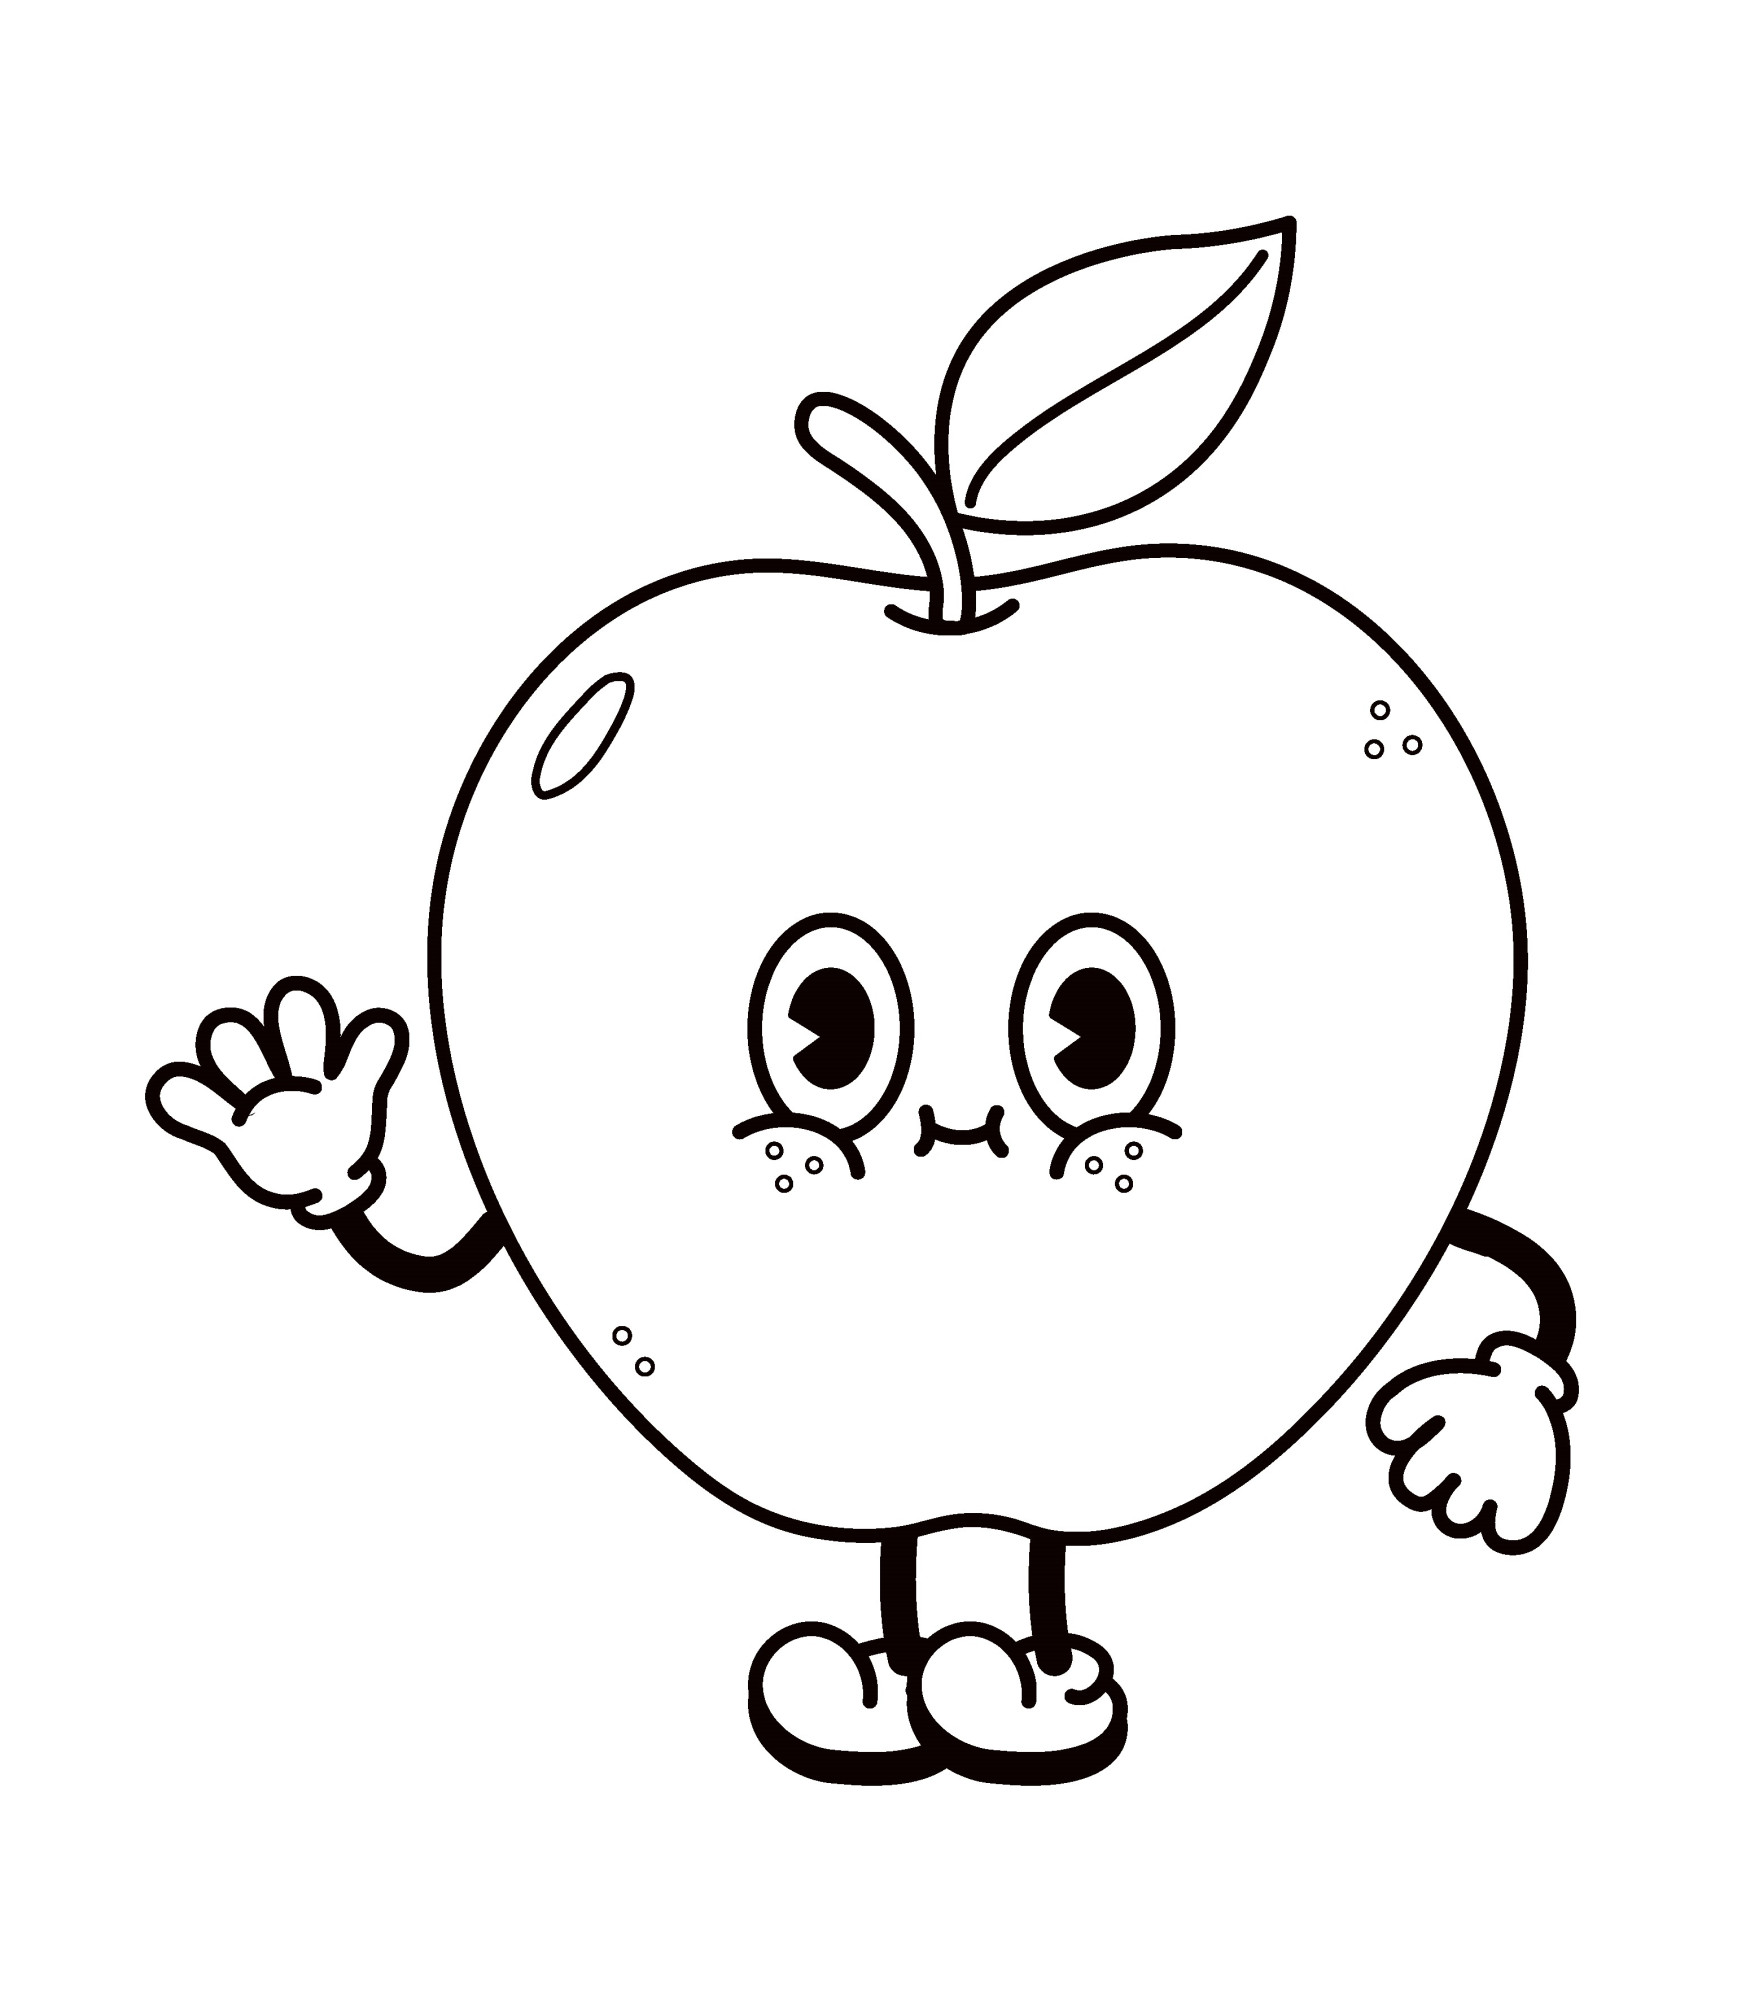 Раскраска для детей: милое яблоко с лицом машет рукой